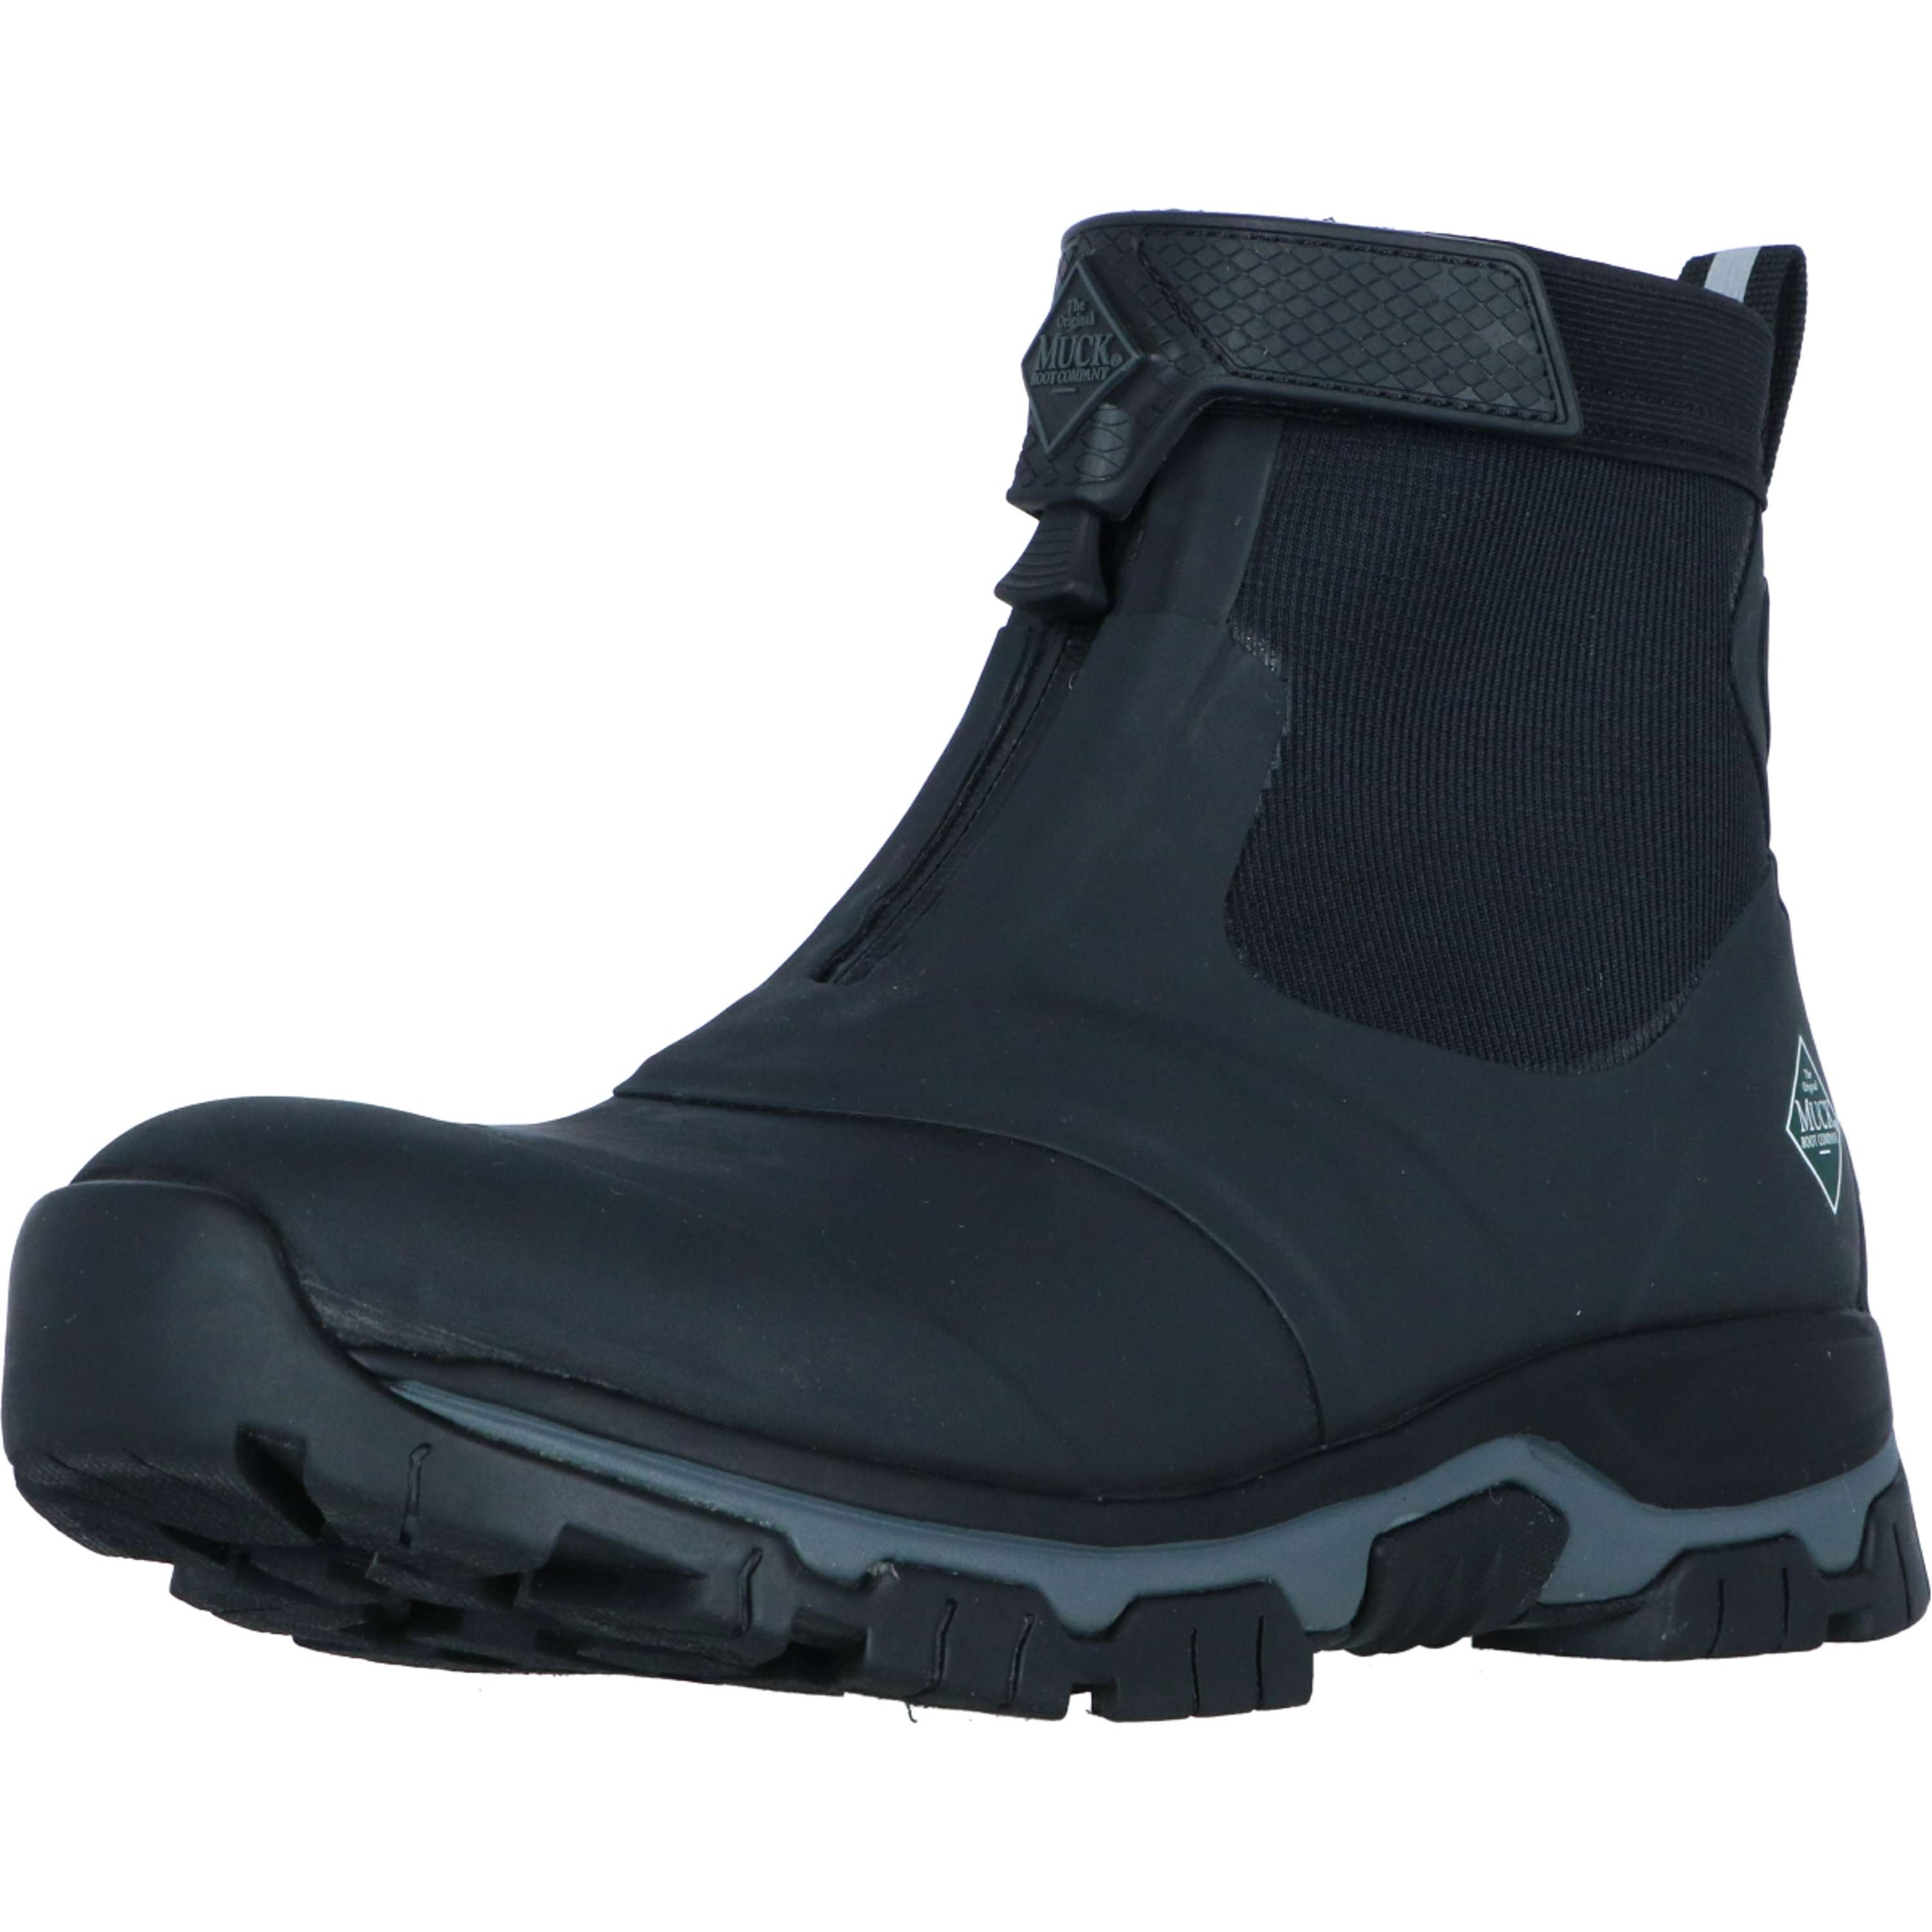 Muck Boot Chaussures d'Écurie Apex Zip Ankle Hommes Noir/Gris